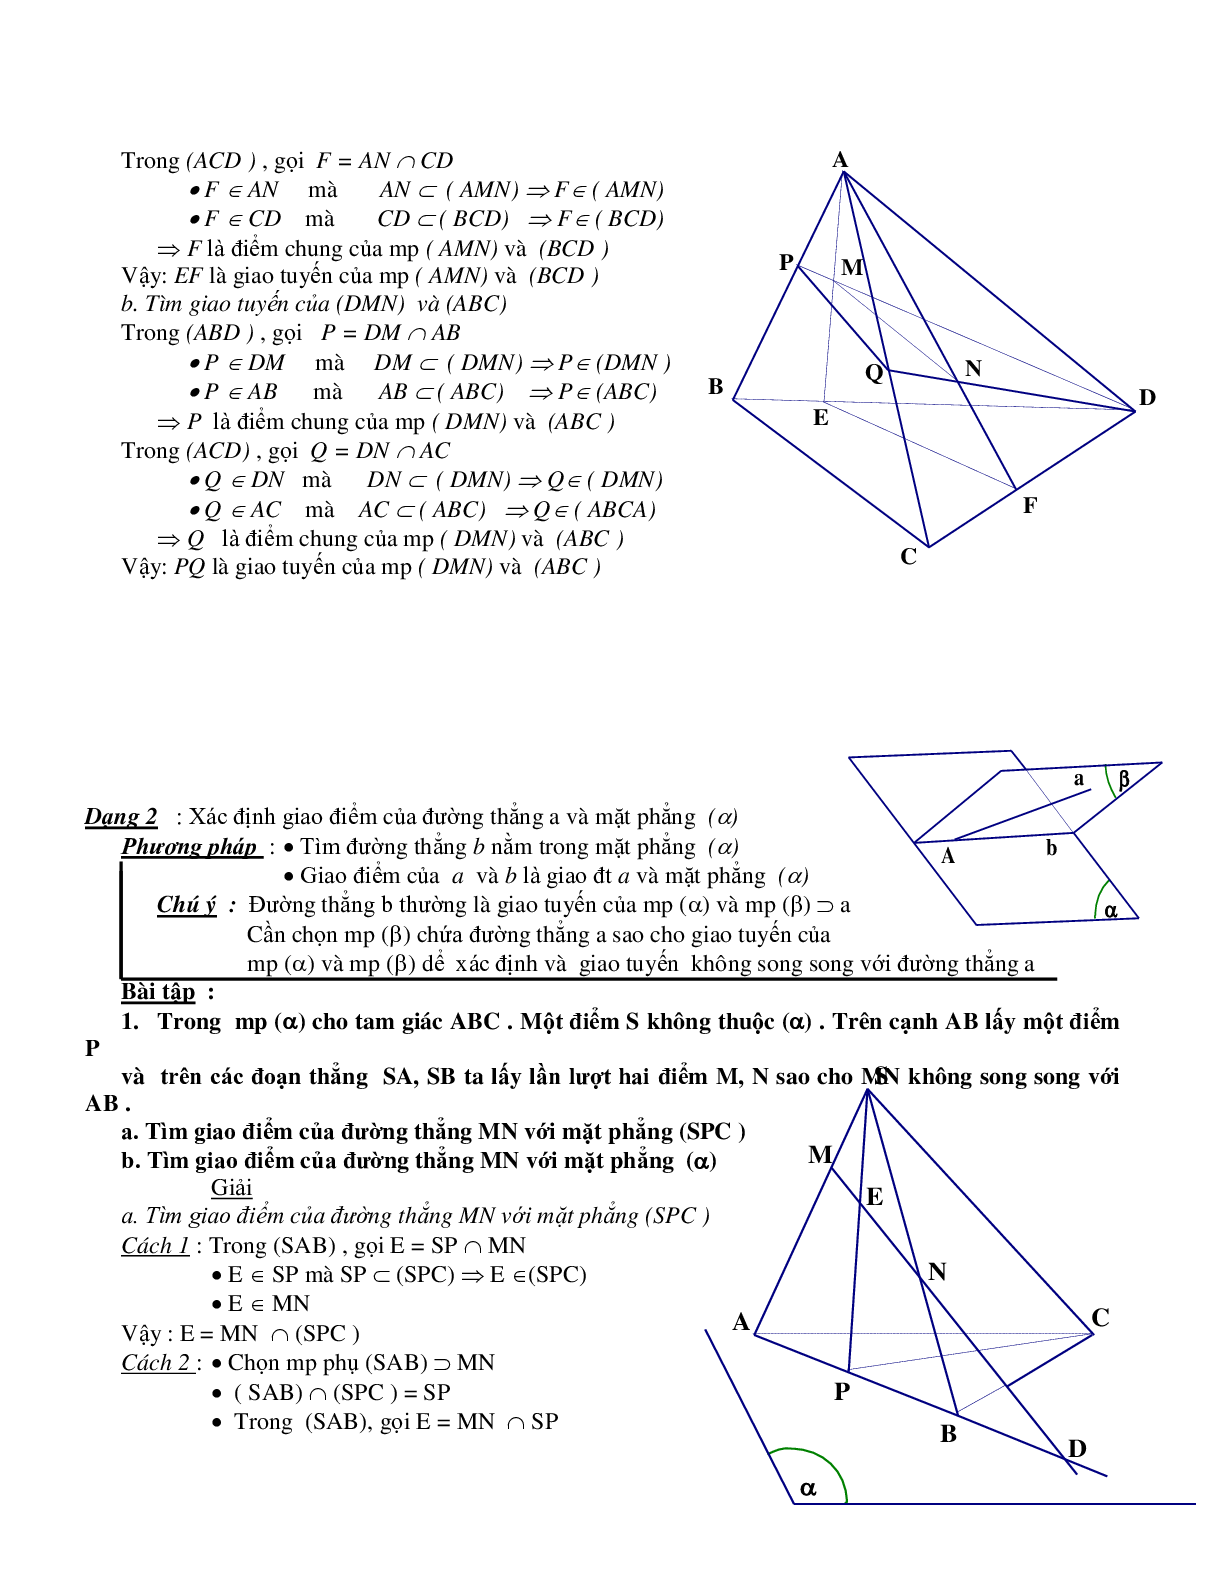 Phương pháp xác định giao điểm – giao tuyến – thiết diện trong không gian (trang 4)